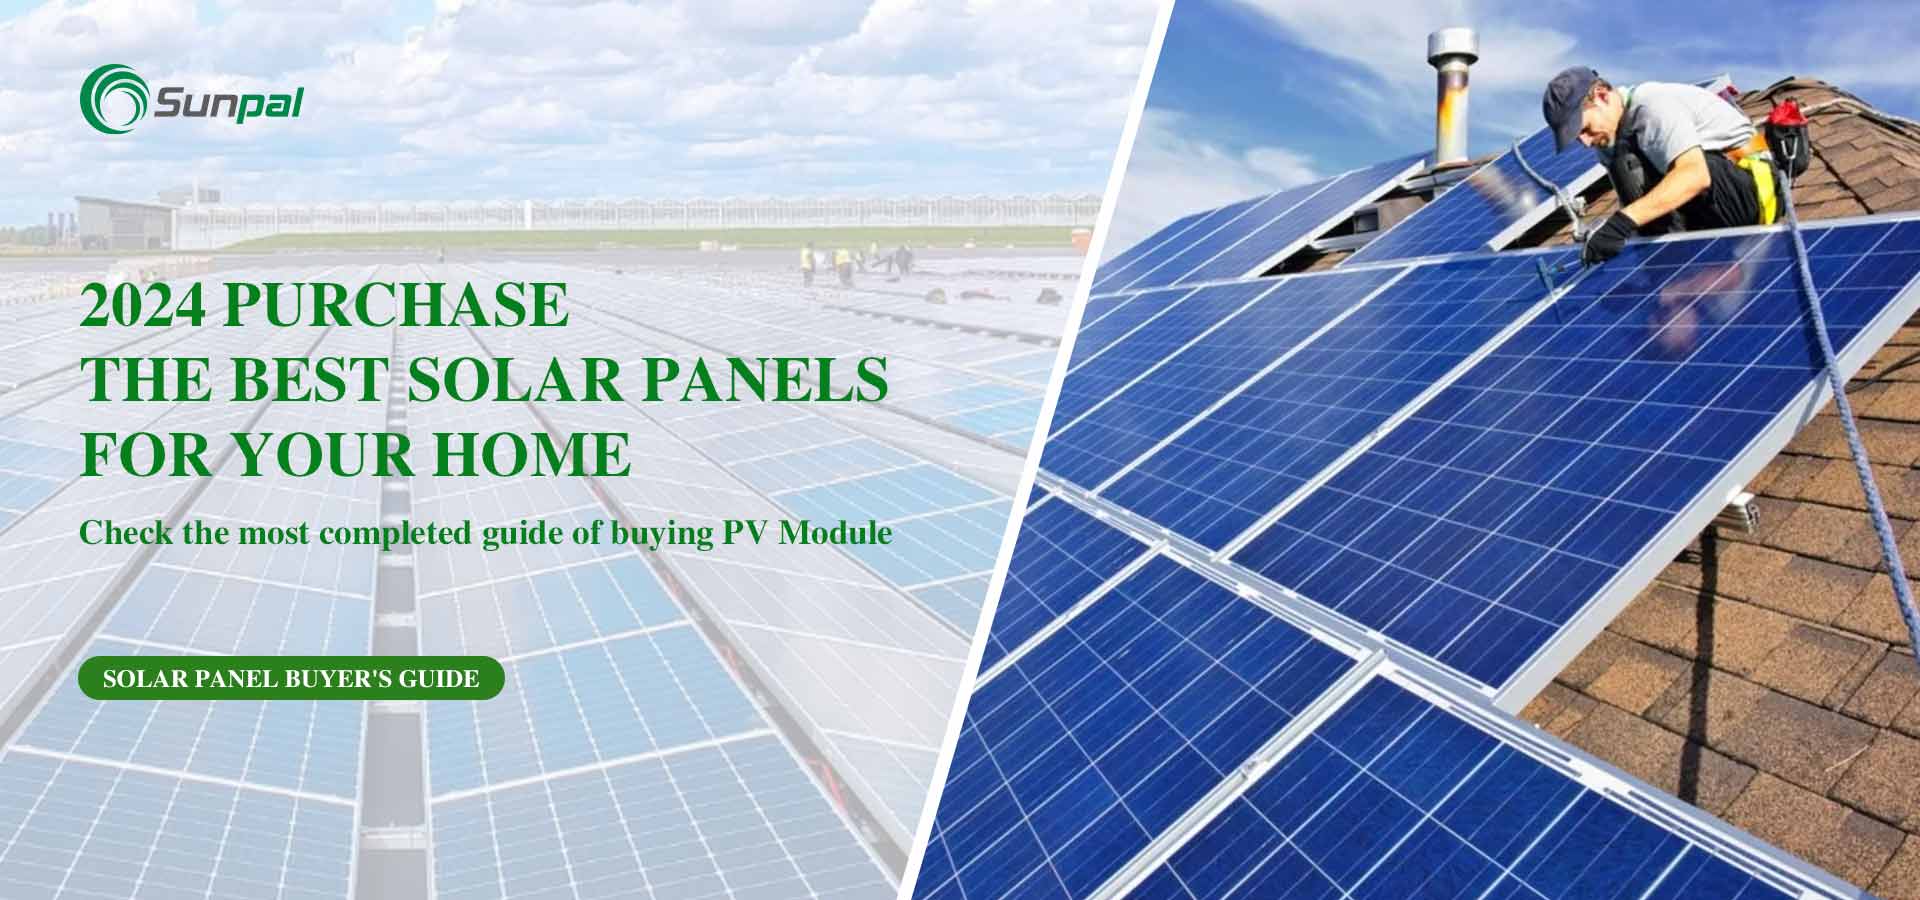 Los mejores paneles solares para su hogar en 2024: guía del comprador